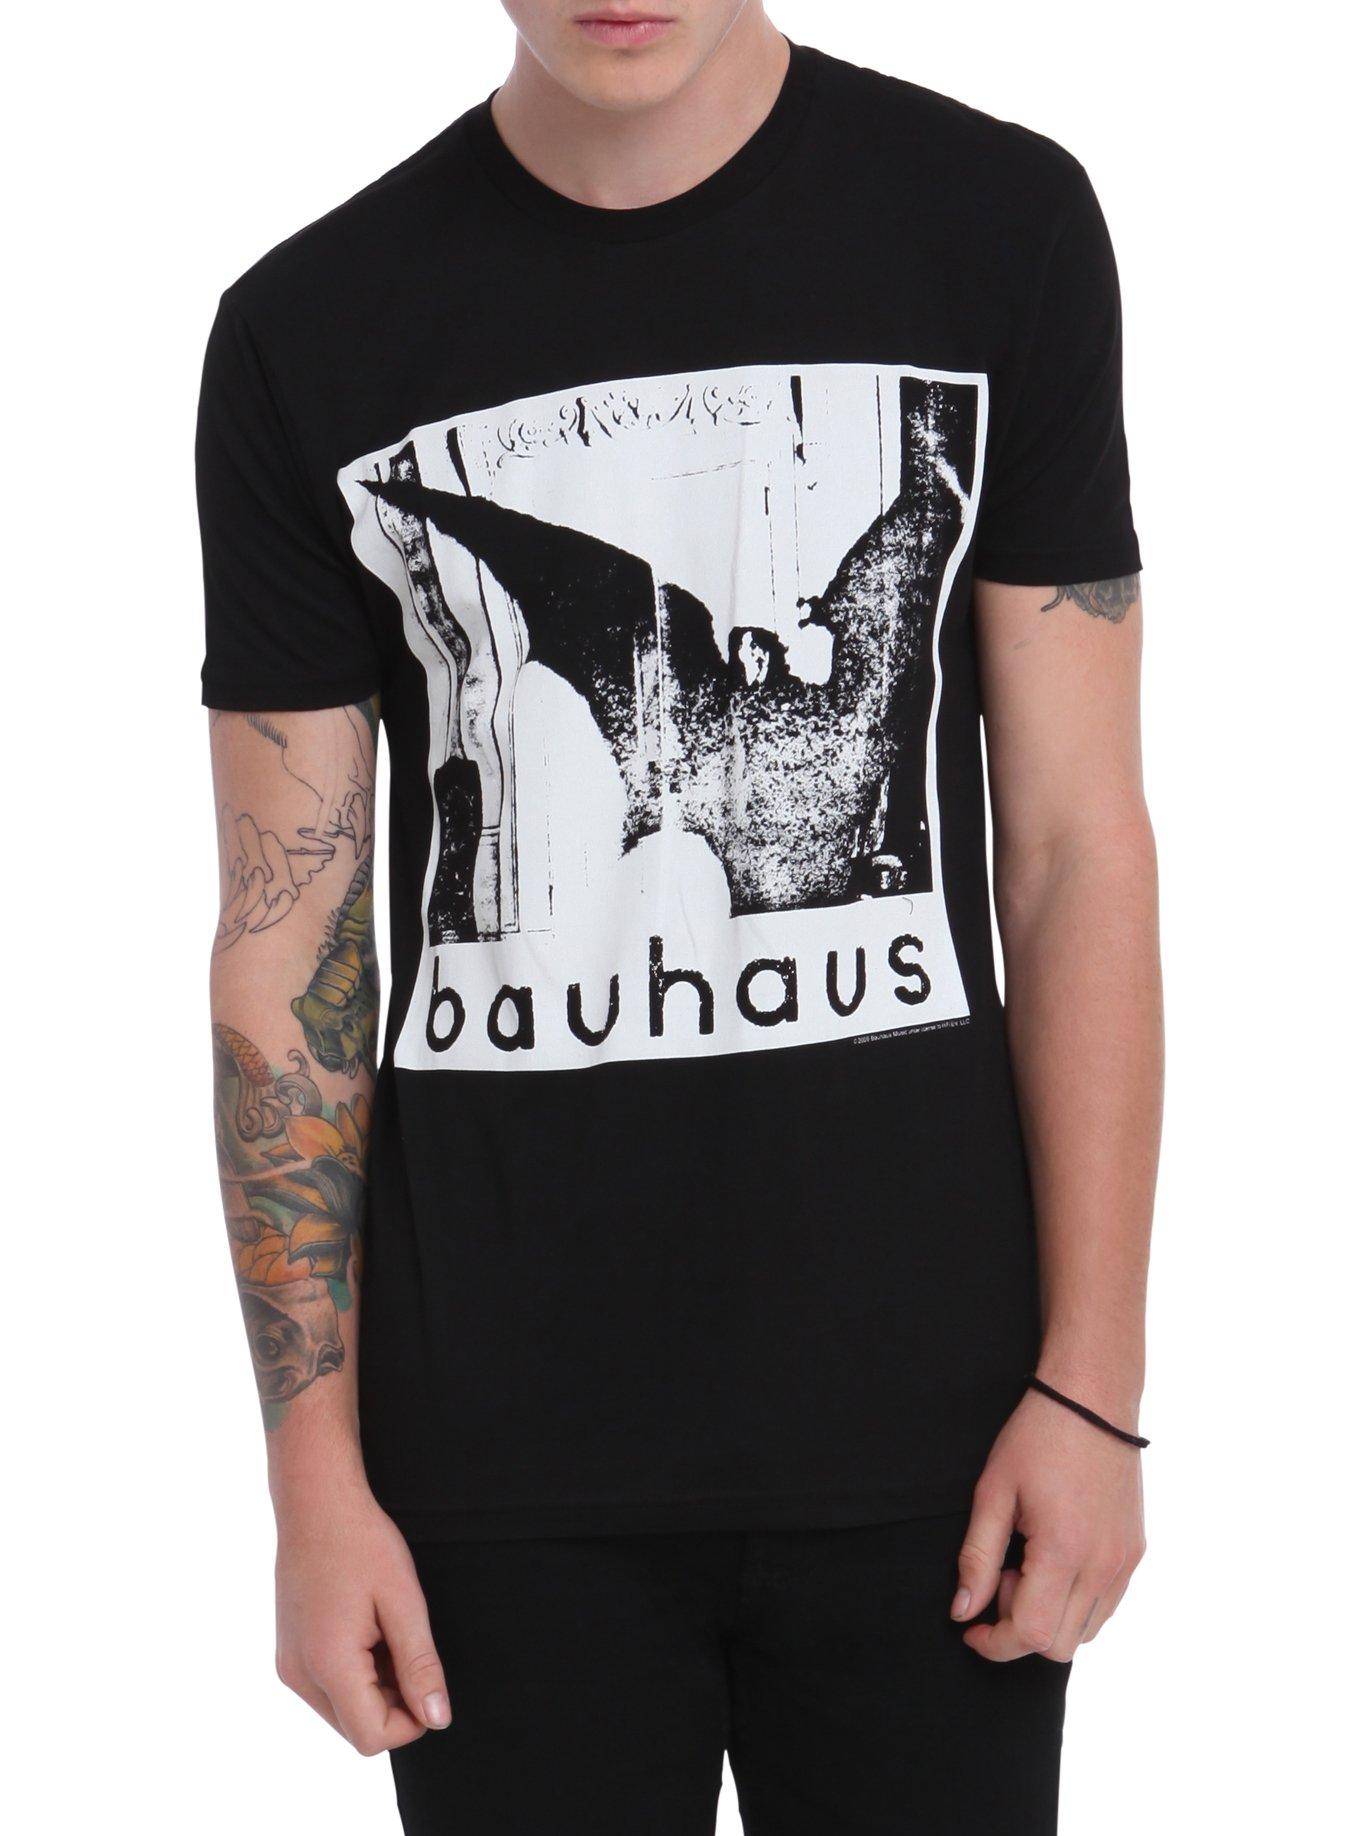 Bauhaus Undead T-Shirt, BLACK, hi-res